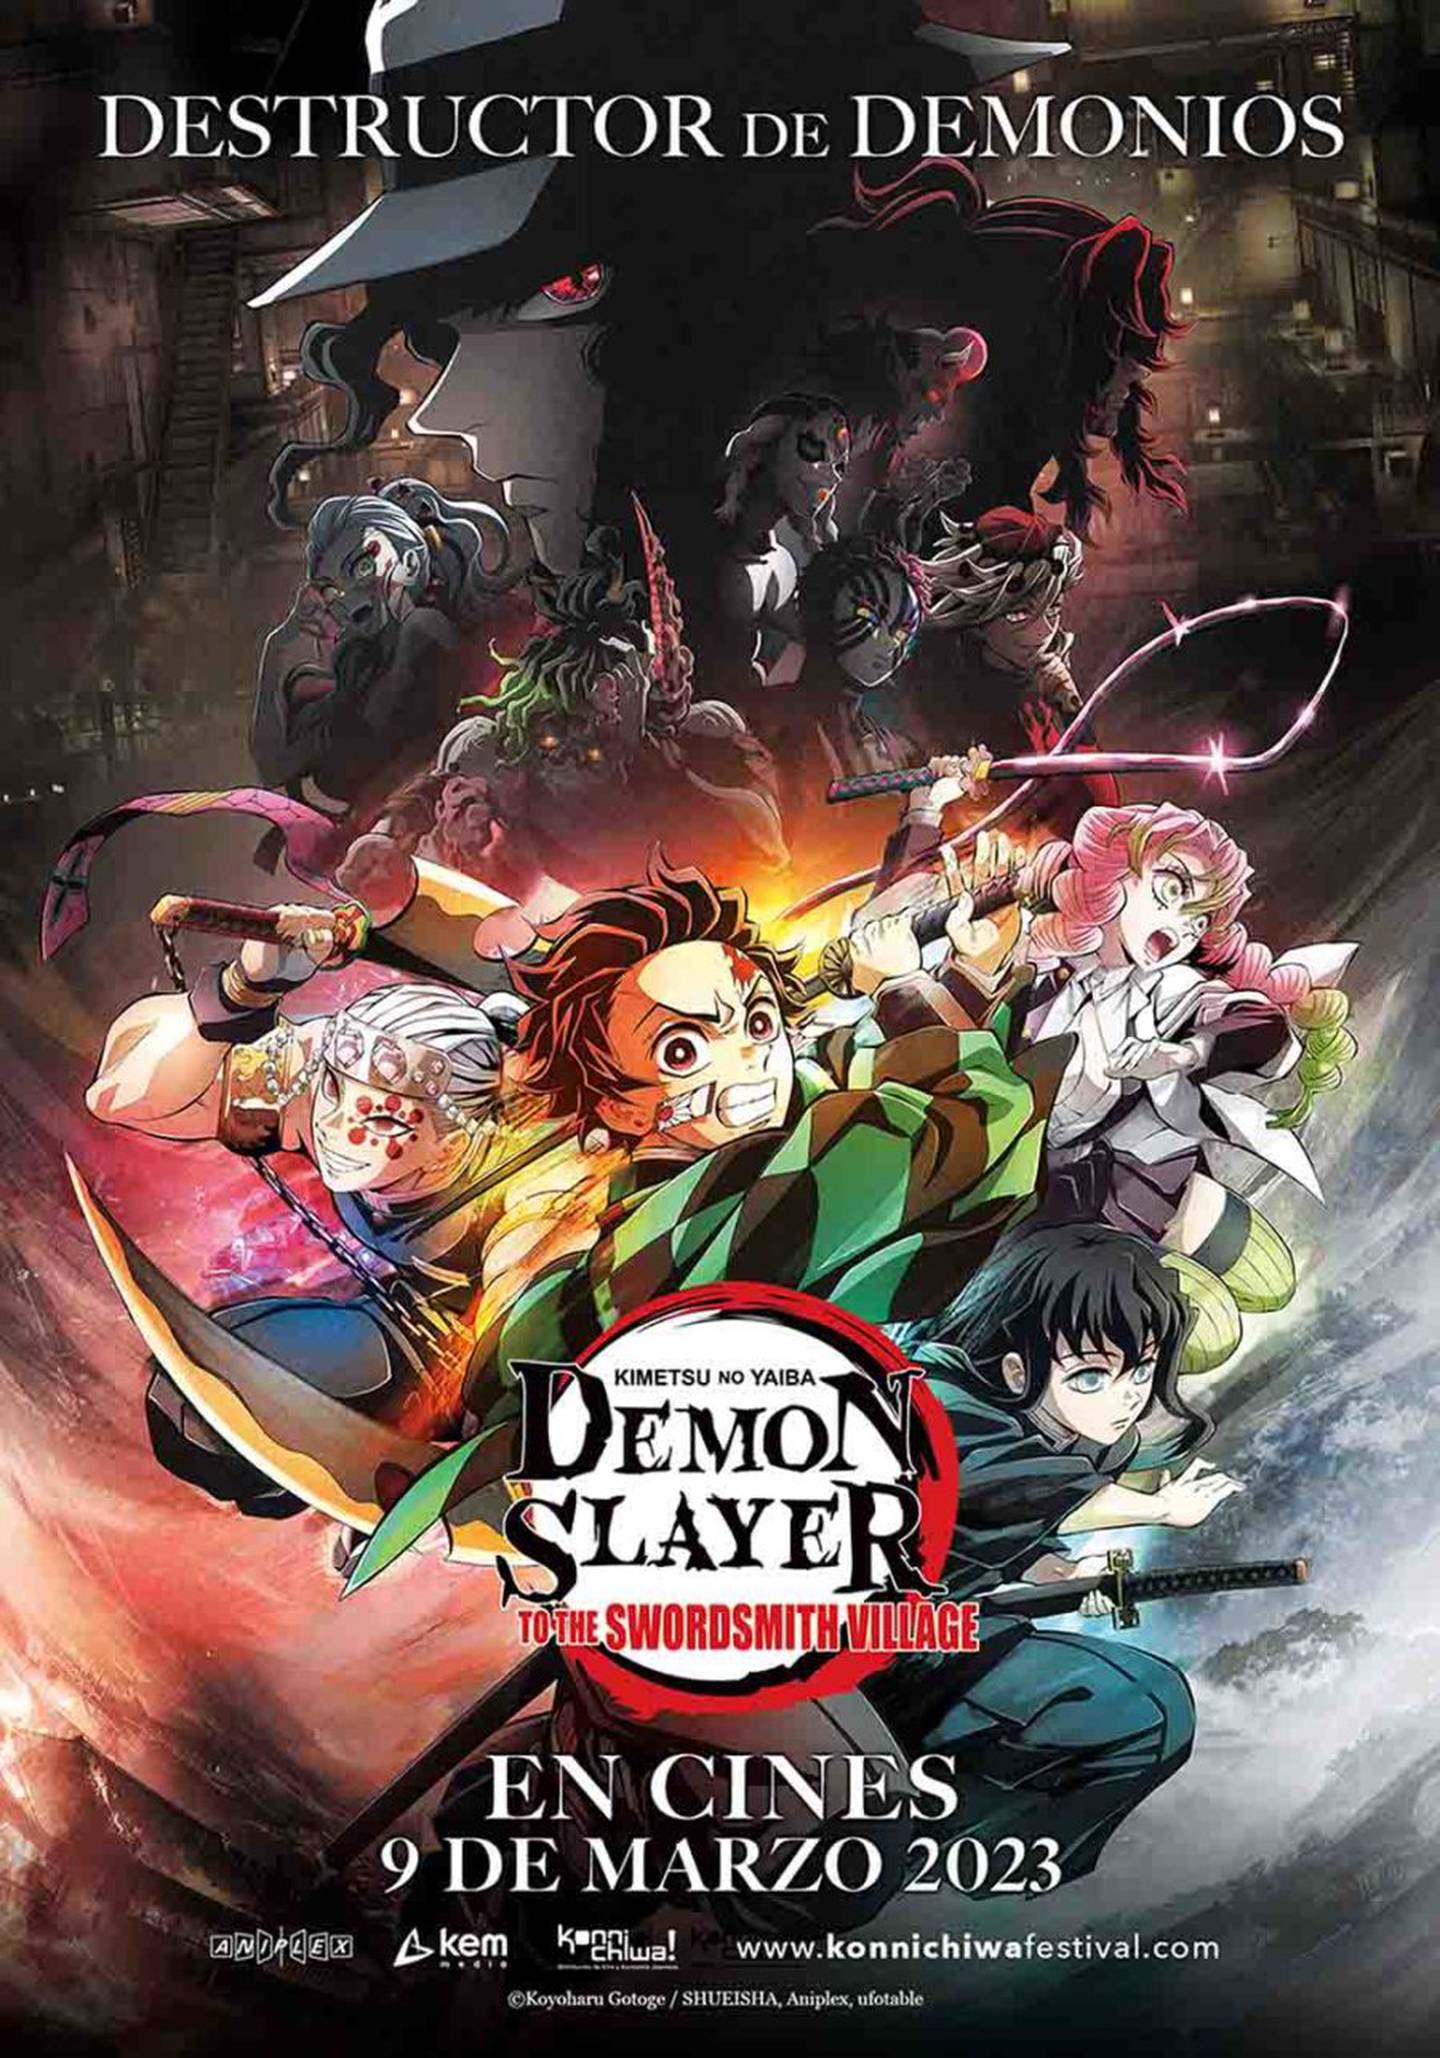 Demon Slayer | Kimetsu no Yaiba: To the Swordsmith Village, la nueva película de la franquicia, ha sido un rotundo éxito de taquilla. Conoce la fecha de estreno en México y América Latina.